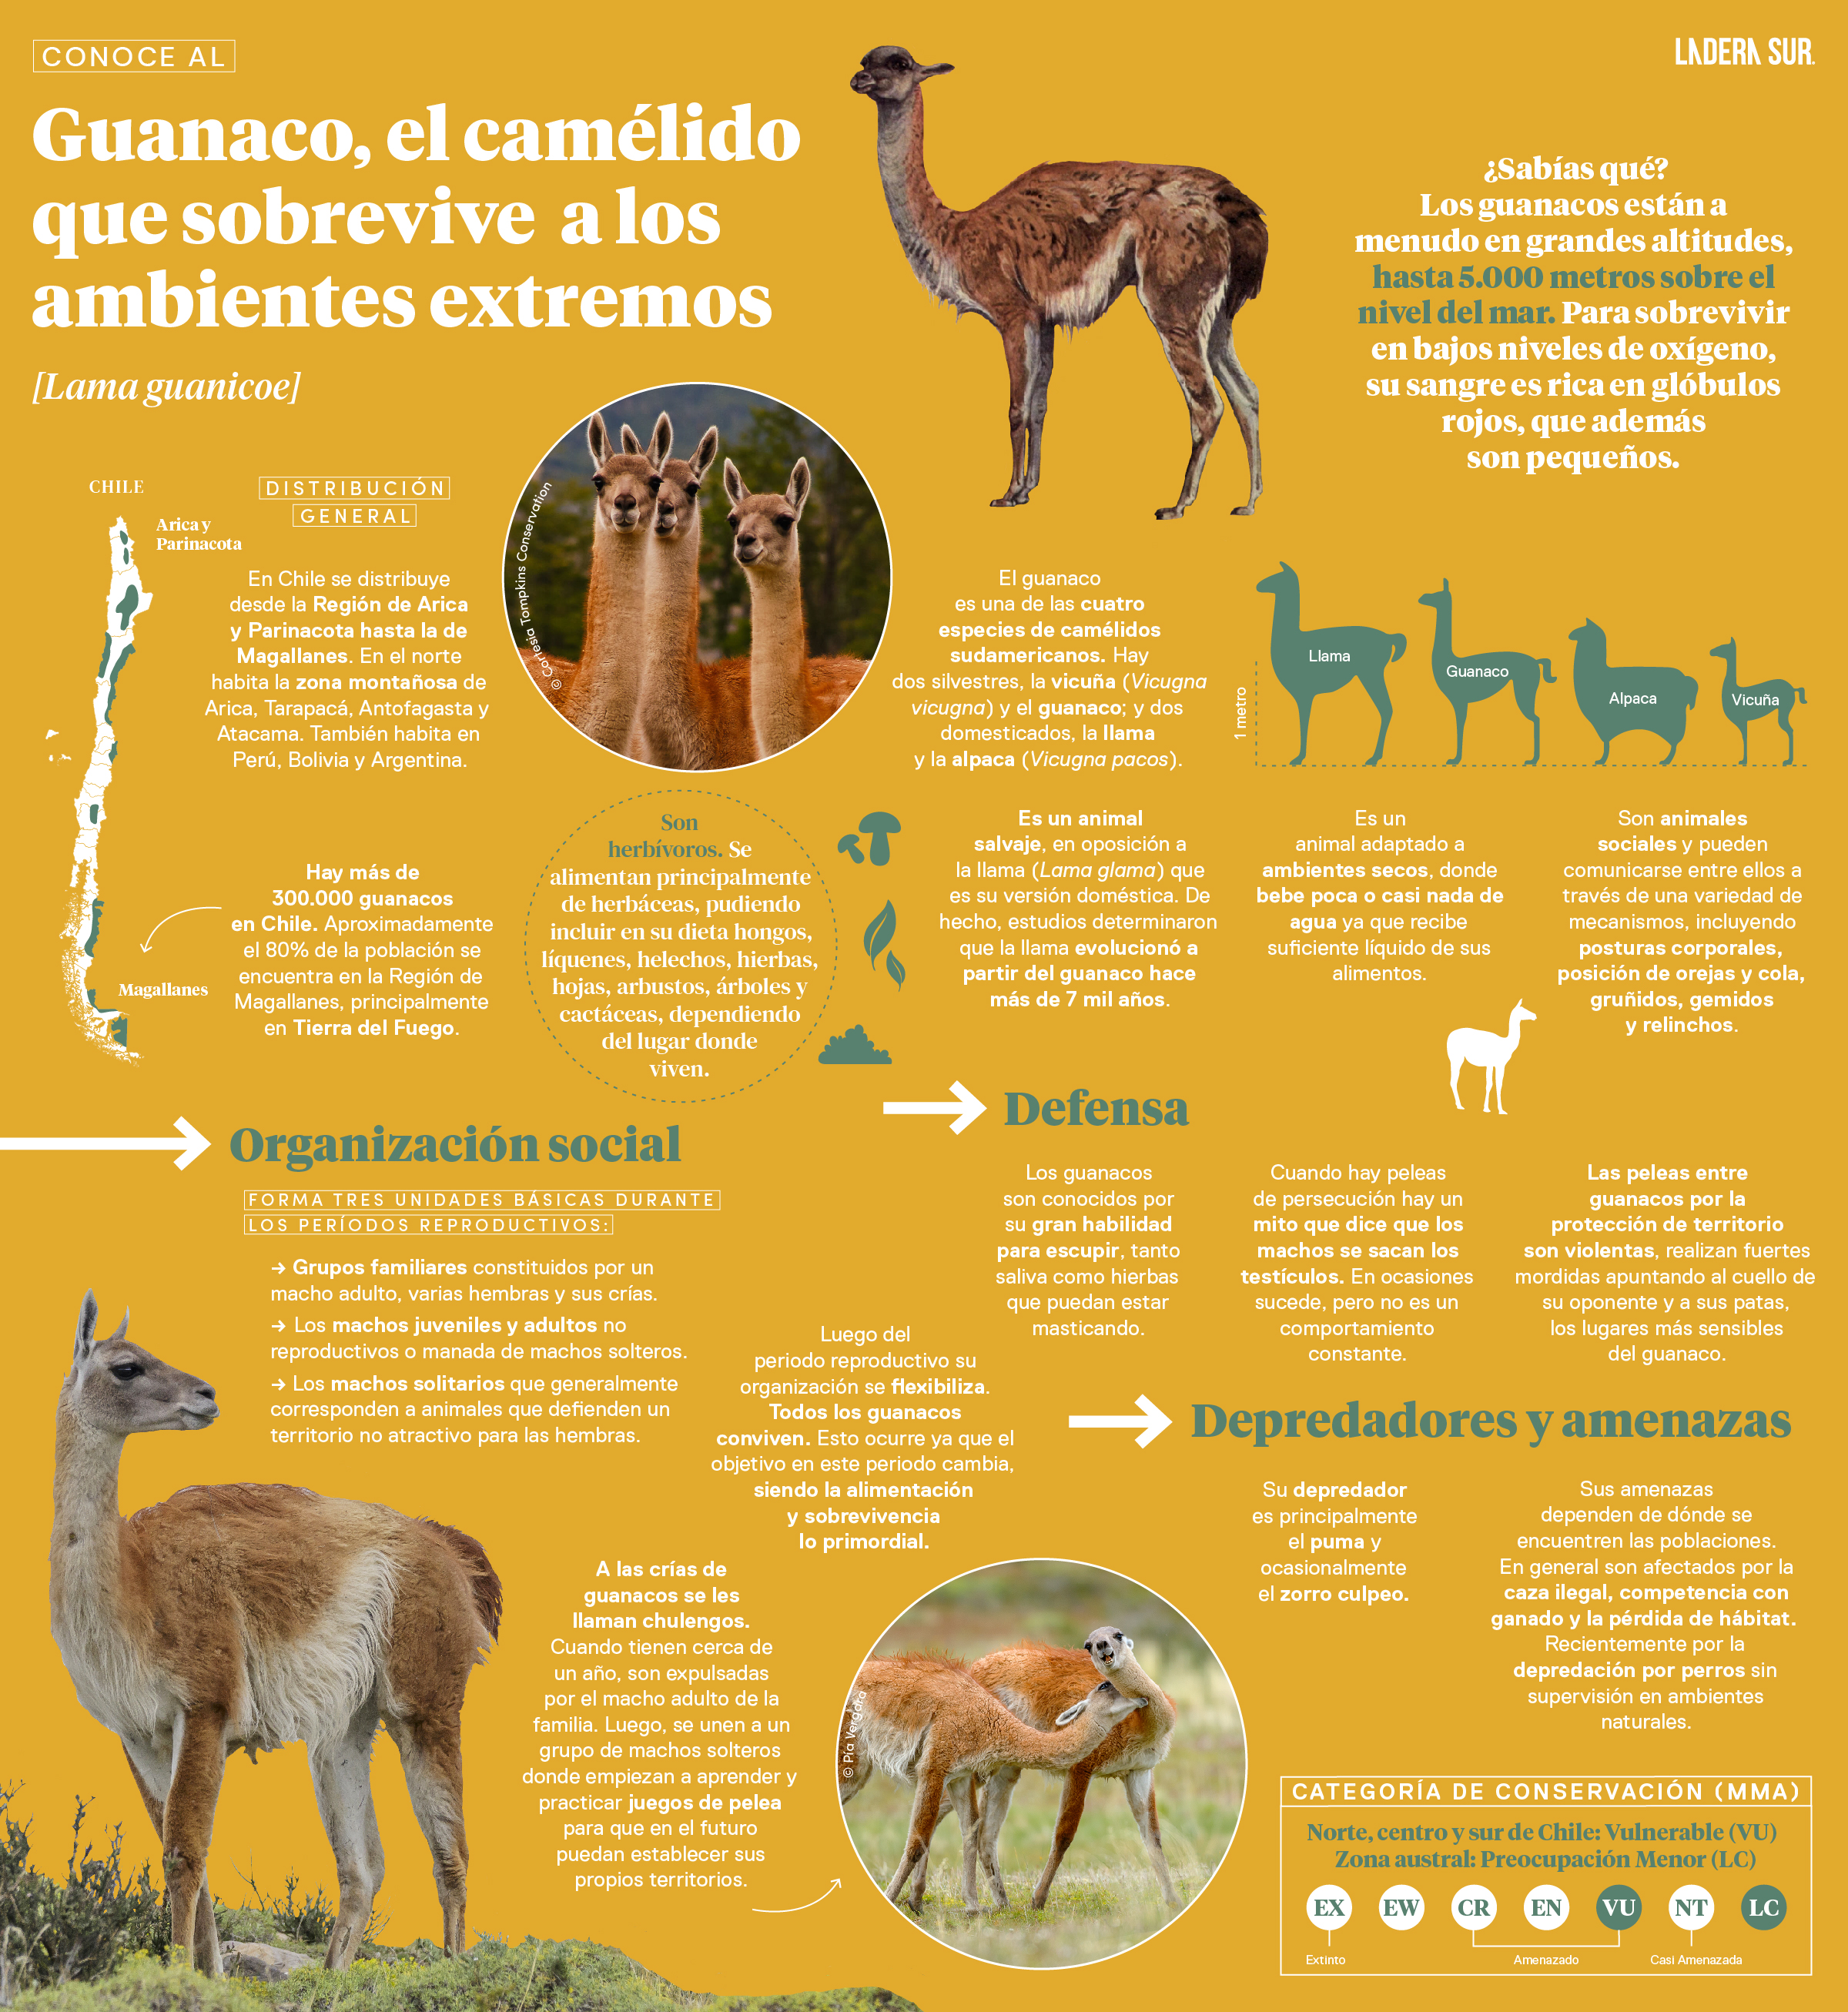 Guanaco, el camélido que sobrevive a los ambientes extremos